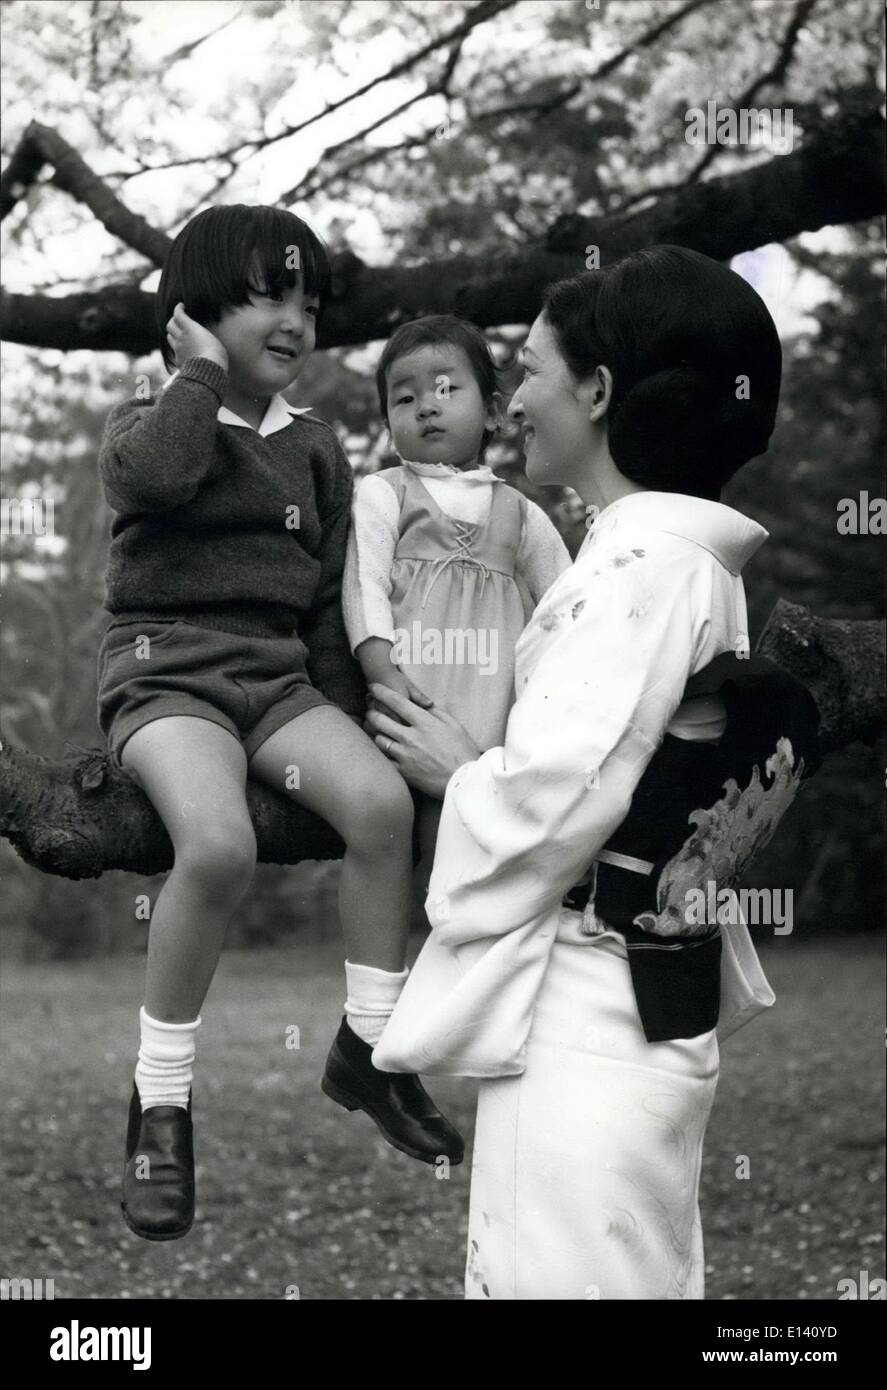 31. März 2012 - Prinz hat '' mod' Frisur; Prinz Hiro ist in Mode mit '' mod'' Frisur, und ist mit seiner Mutter Kronprinzessin Michiko und Babyschwester Prinzessin Nori (2 Jahren), auf einem Ast im Park der Tōgu-Palast, ihren Wohnsitz in Tokio gezeigt. Stockfoto